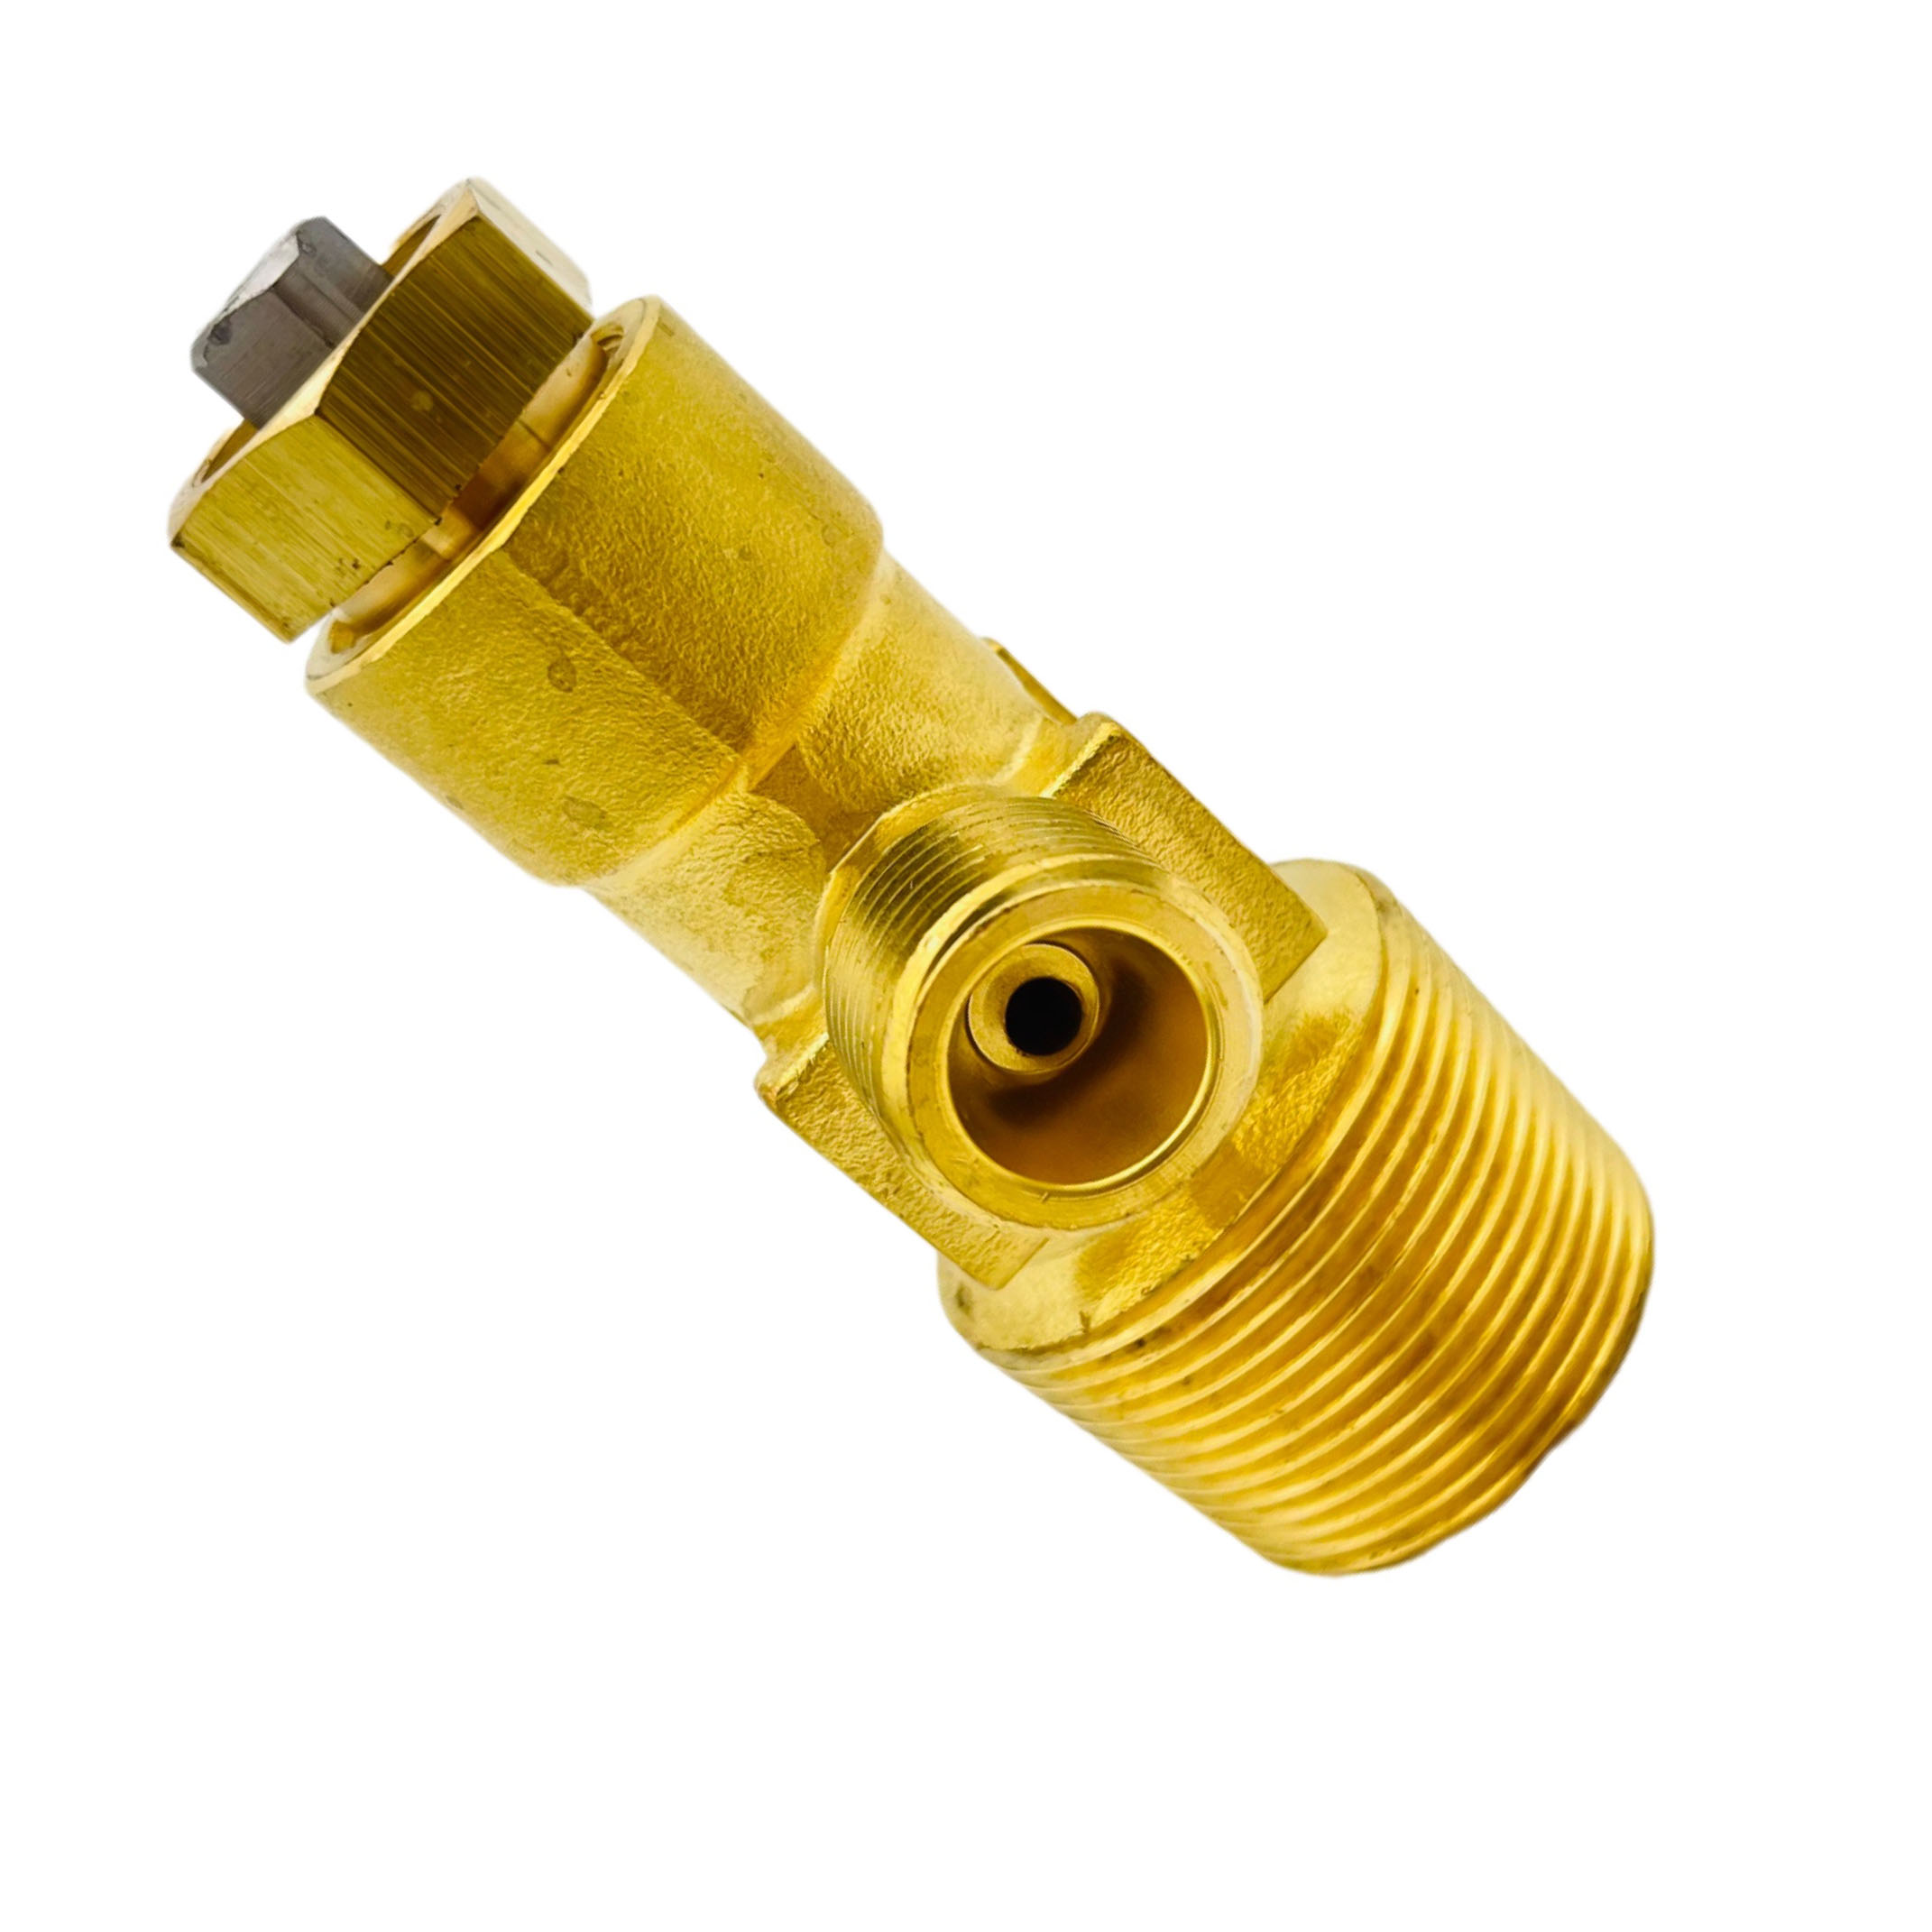 Válvula de bronze industrial de alta pressão do cilindro do acetileno CGA300 C2H2